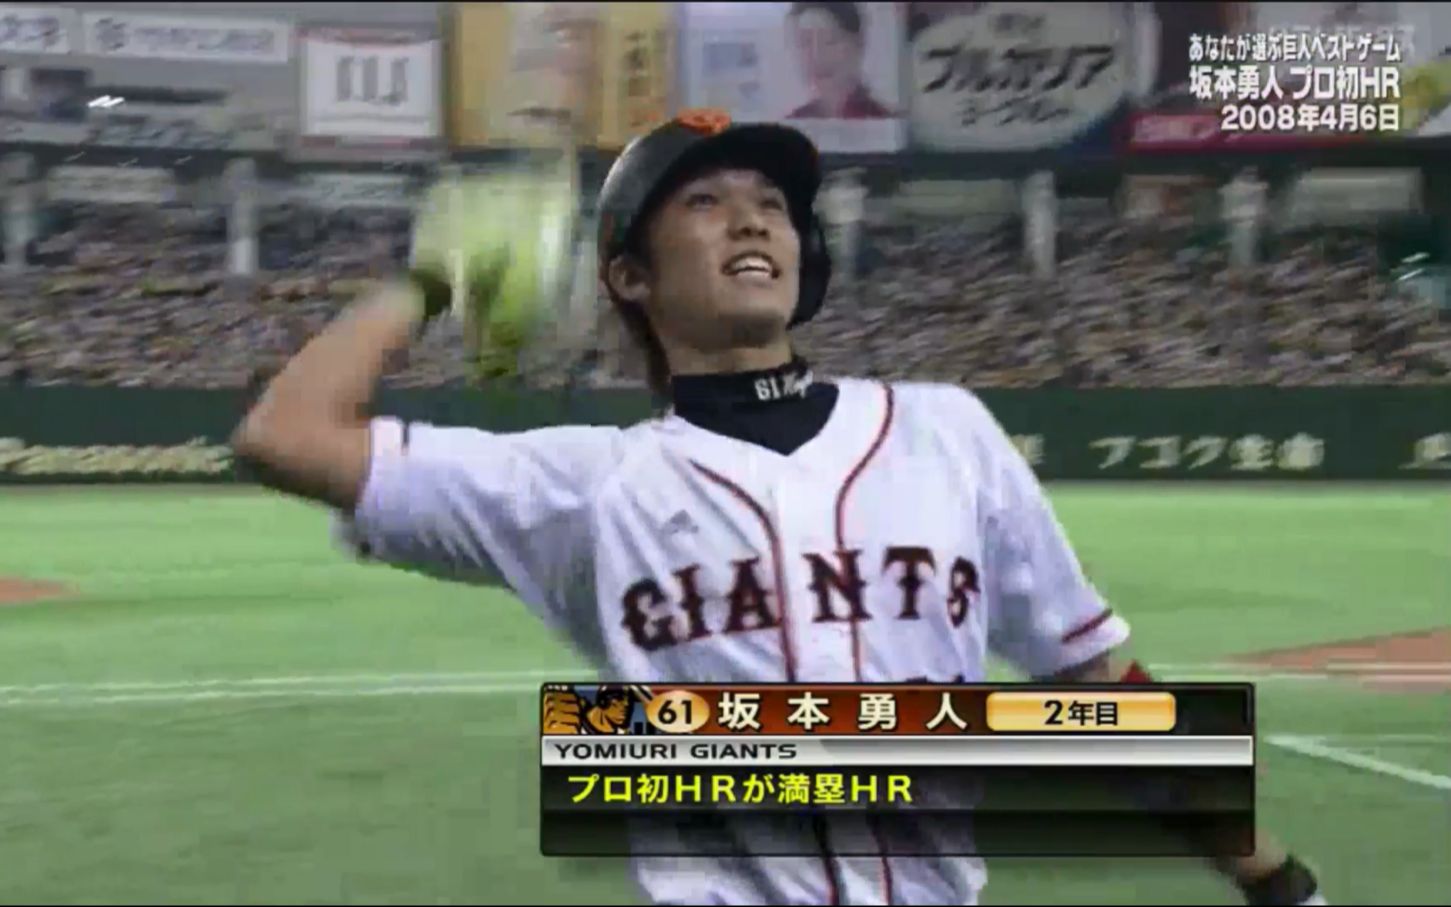 2008年4月6日巨人vs阪神坂本勇人首发全垒打（史上最年少满贯炮）完整 